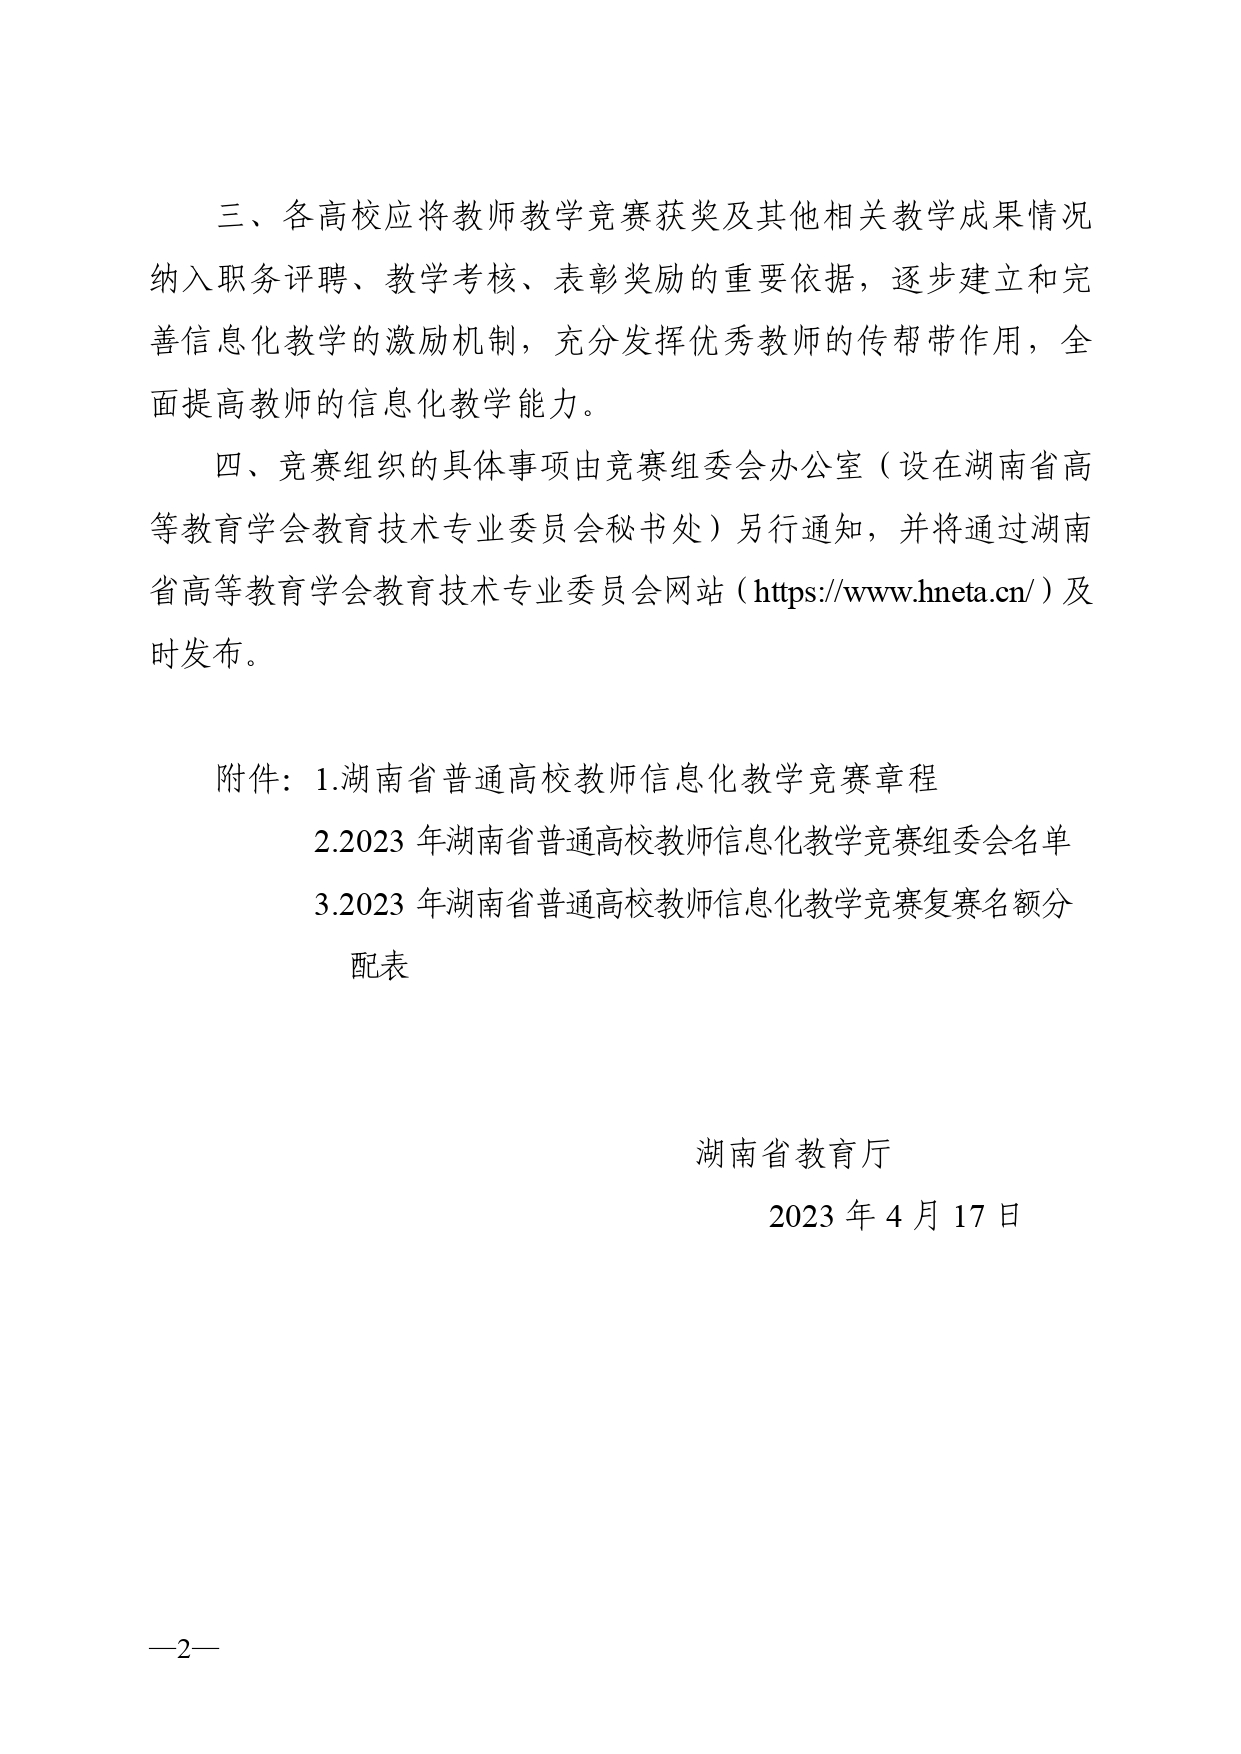 关于开展2023年湖南省普通高校教师信息化教学竞赛的通知正文(1)_page-0002.jpg